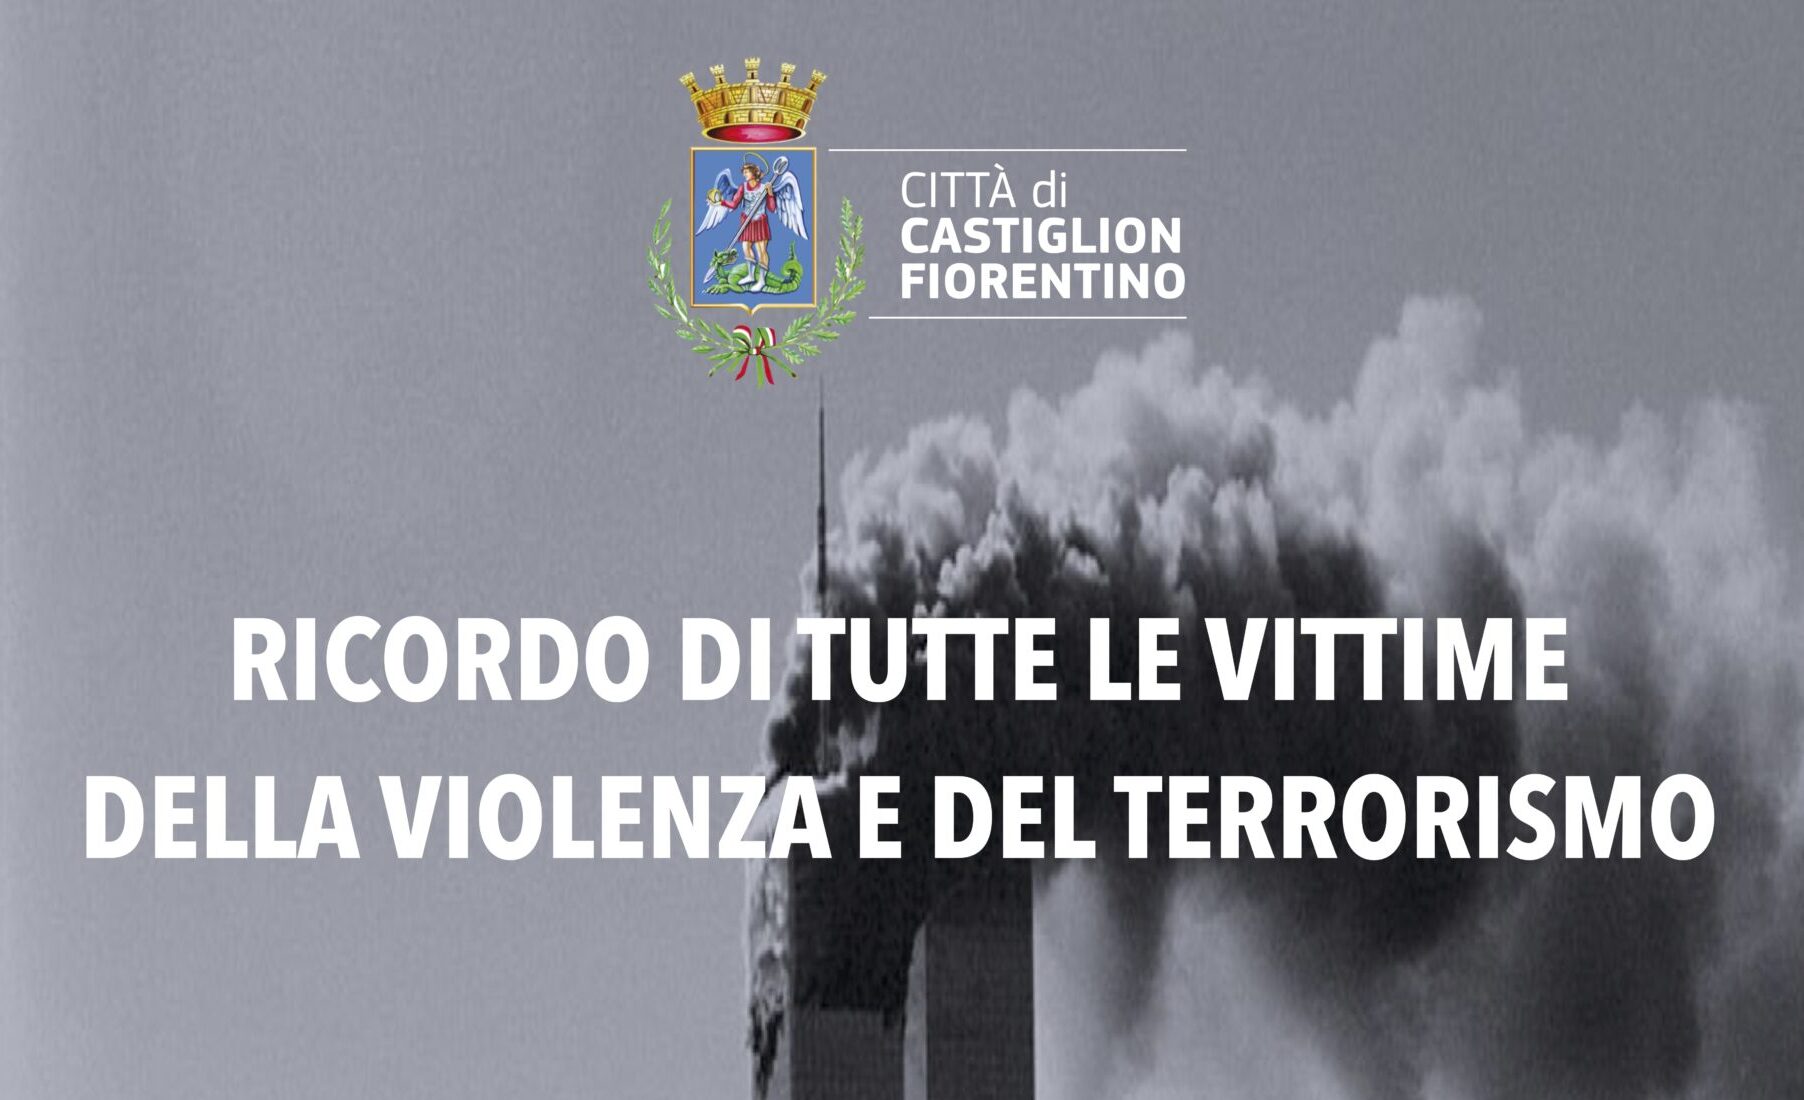 Castiglion Fiorentino commemora le vittime dell’11 settembre